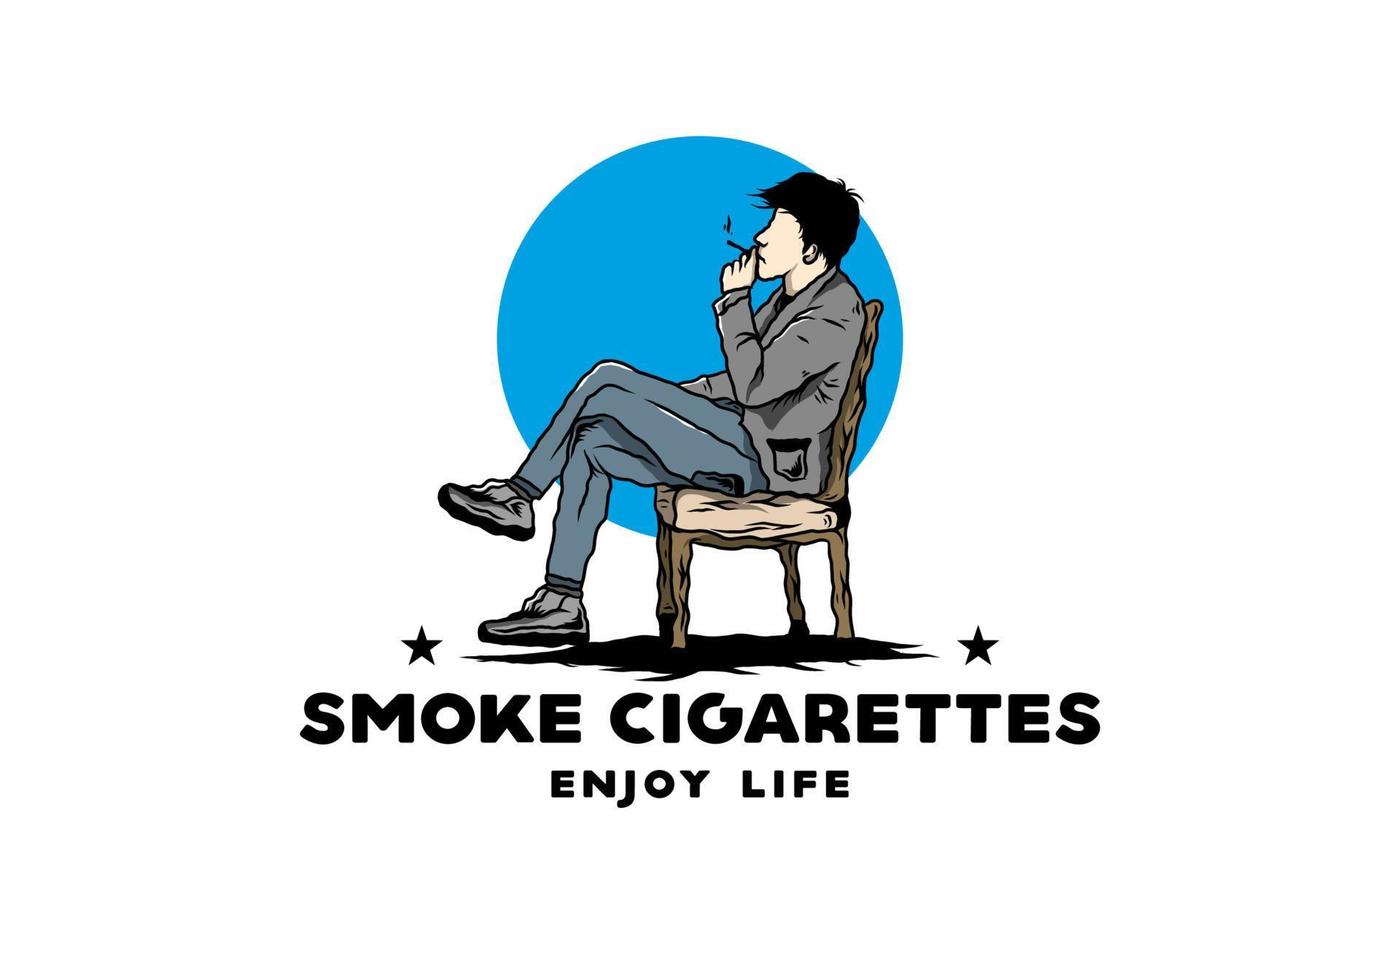 l'uomo si siede sulla sedia e fuma l'illustrazione delle sigarette vettore